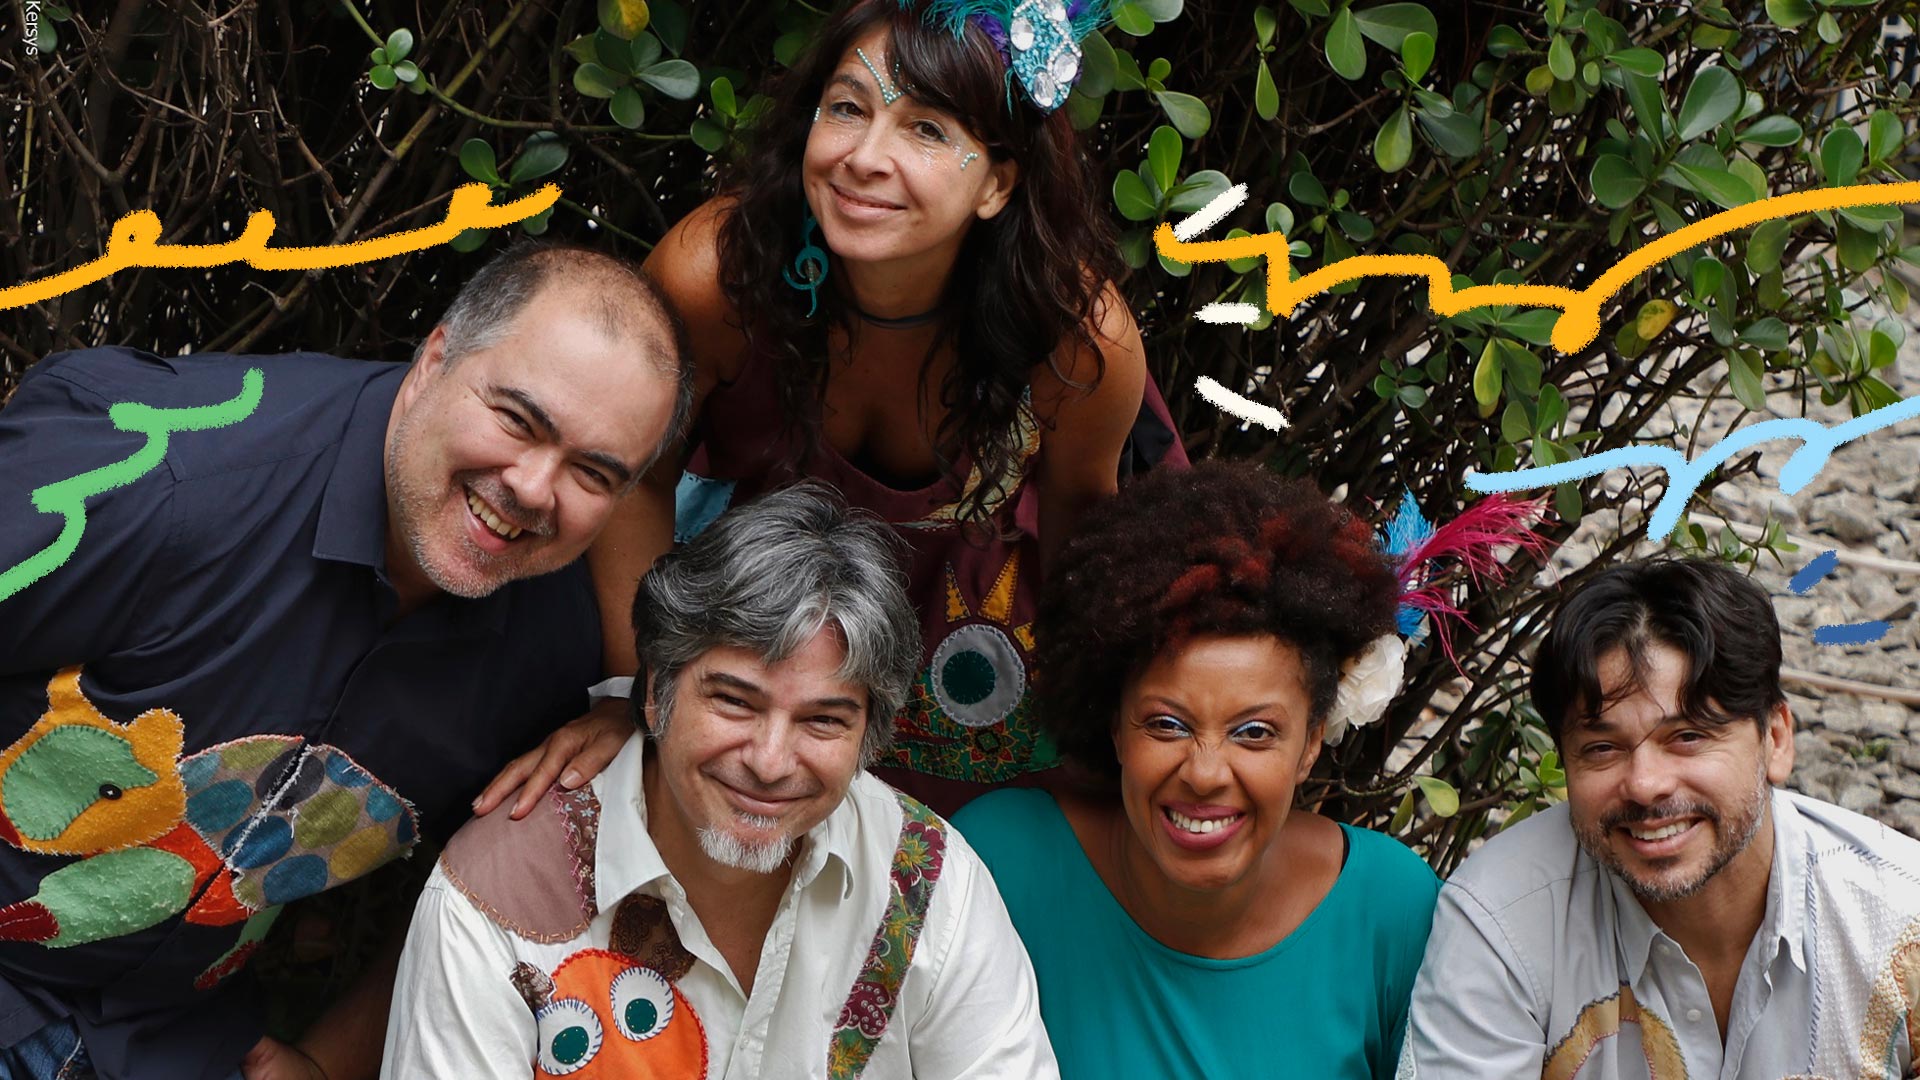 Integrantes do grupo musical Brasileirinhos posam sorridentes na fotografia